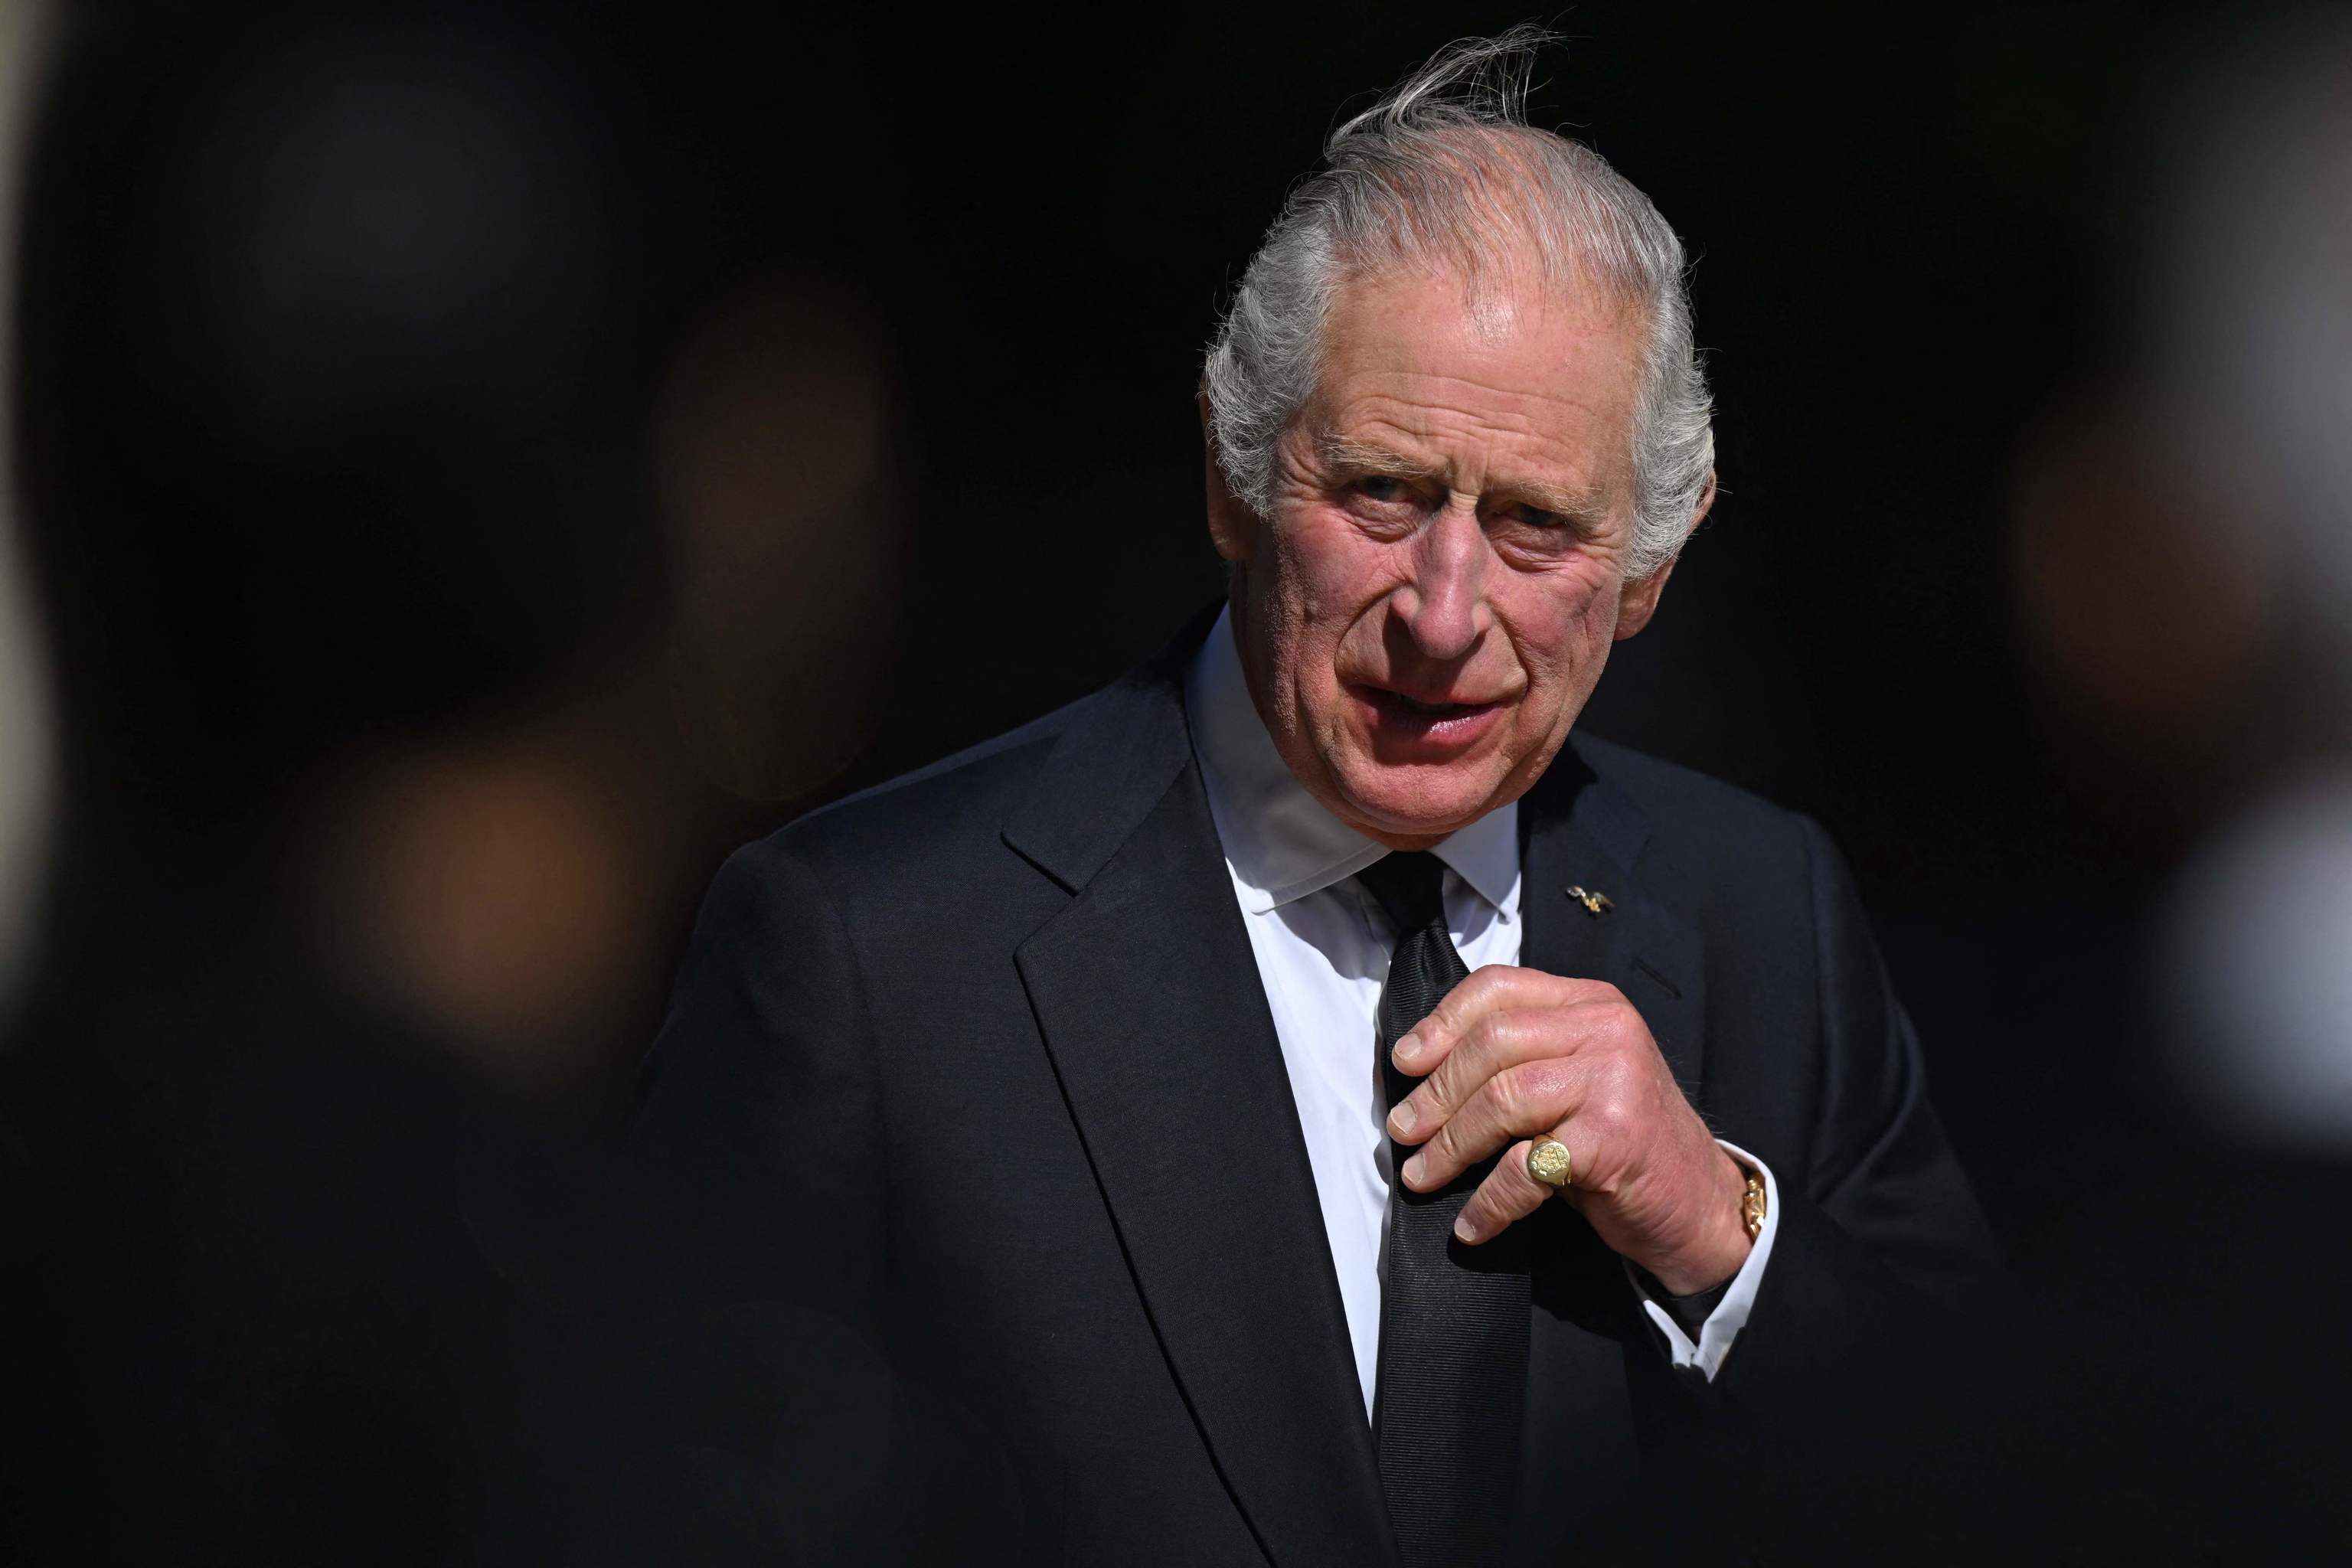 Carles III, alertat per activistes contra Meghan Markle i Harry el dia de la coronació